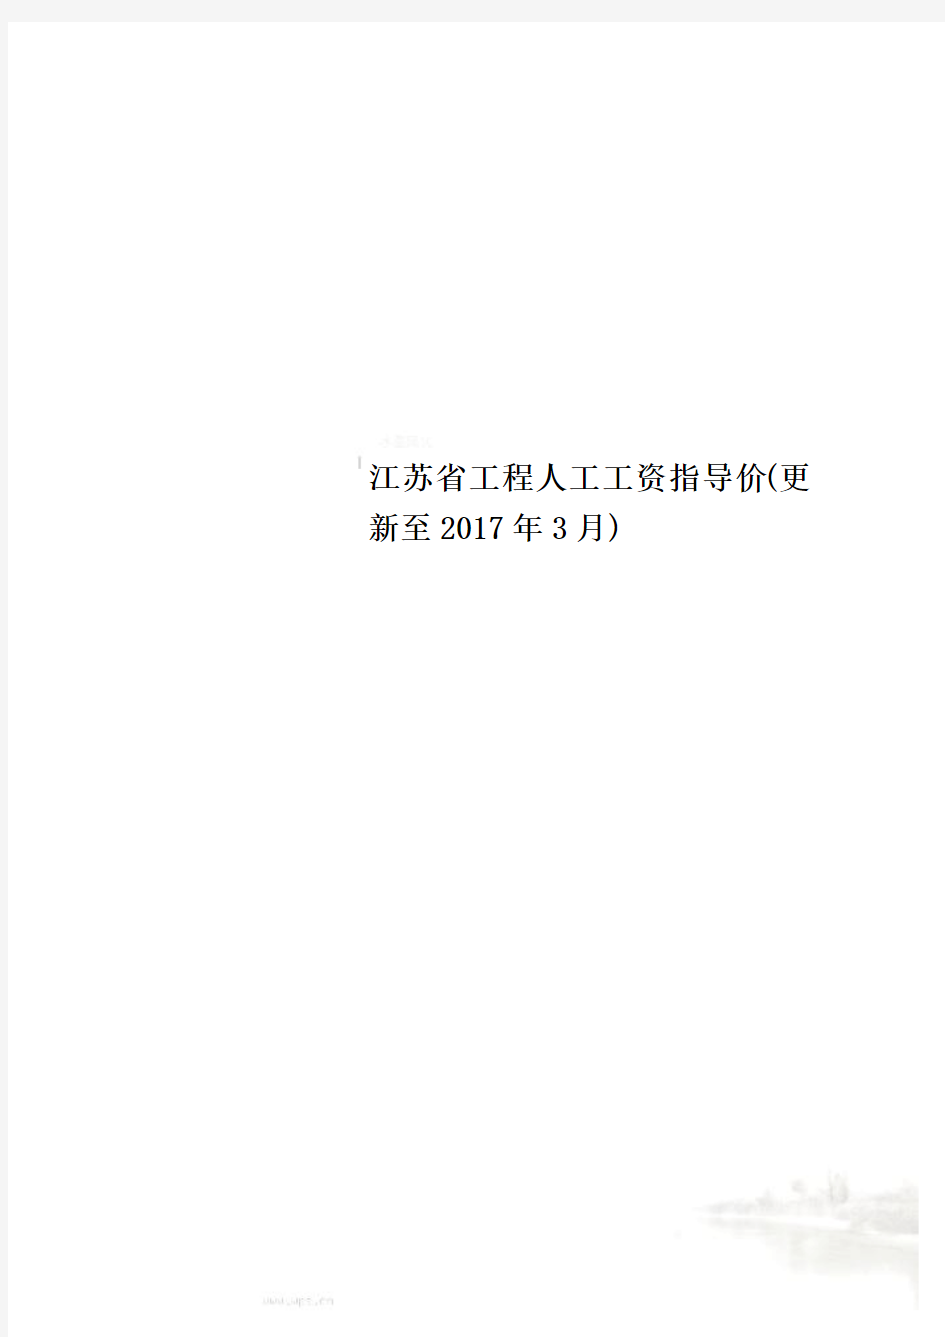 江苏省工程人工工资指导价(更新至2017年3月)